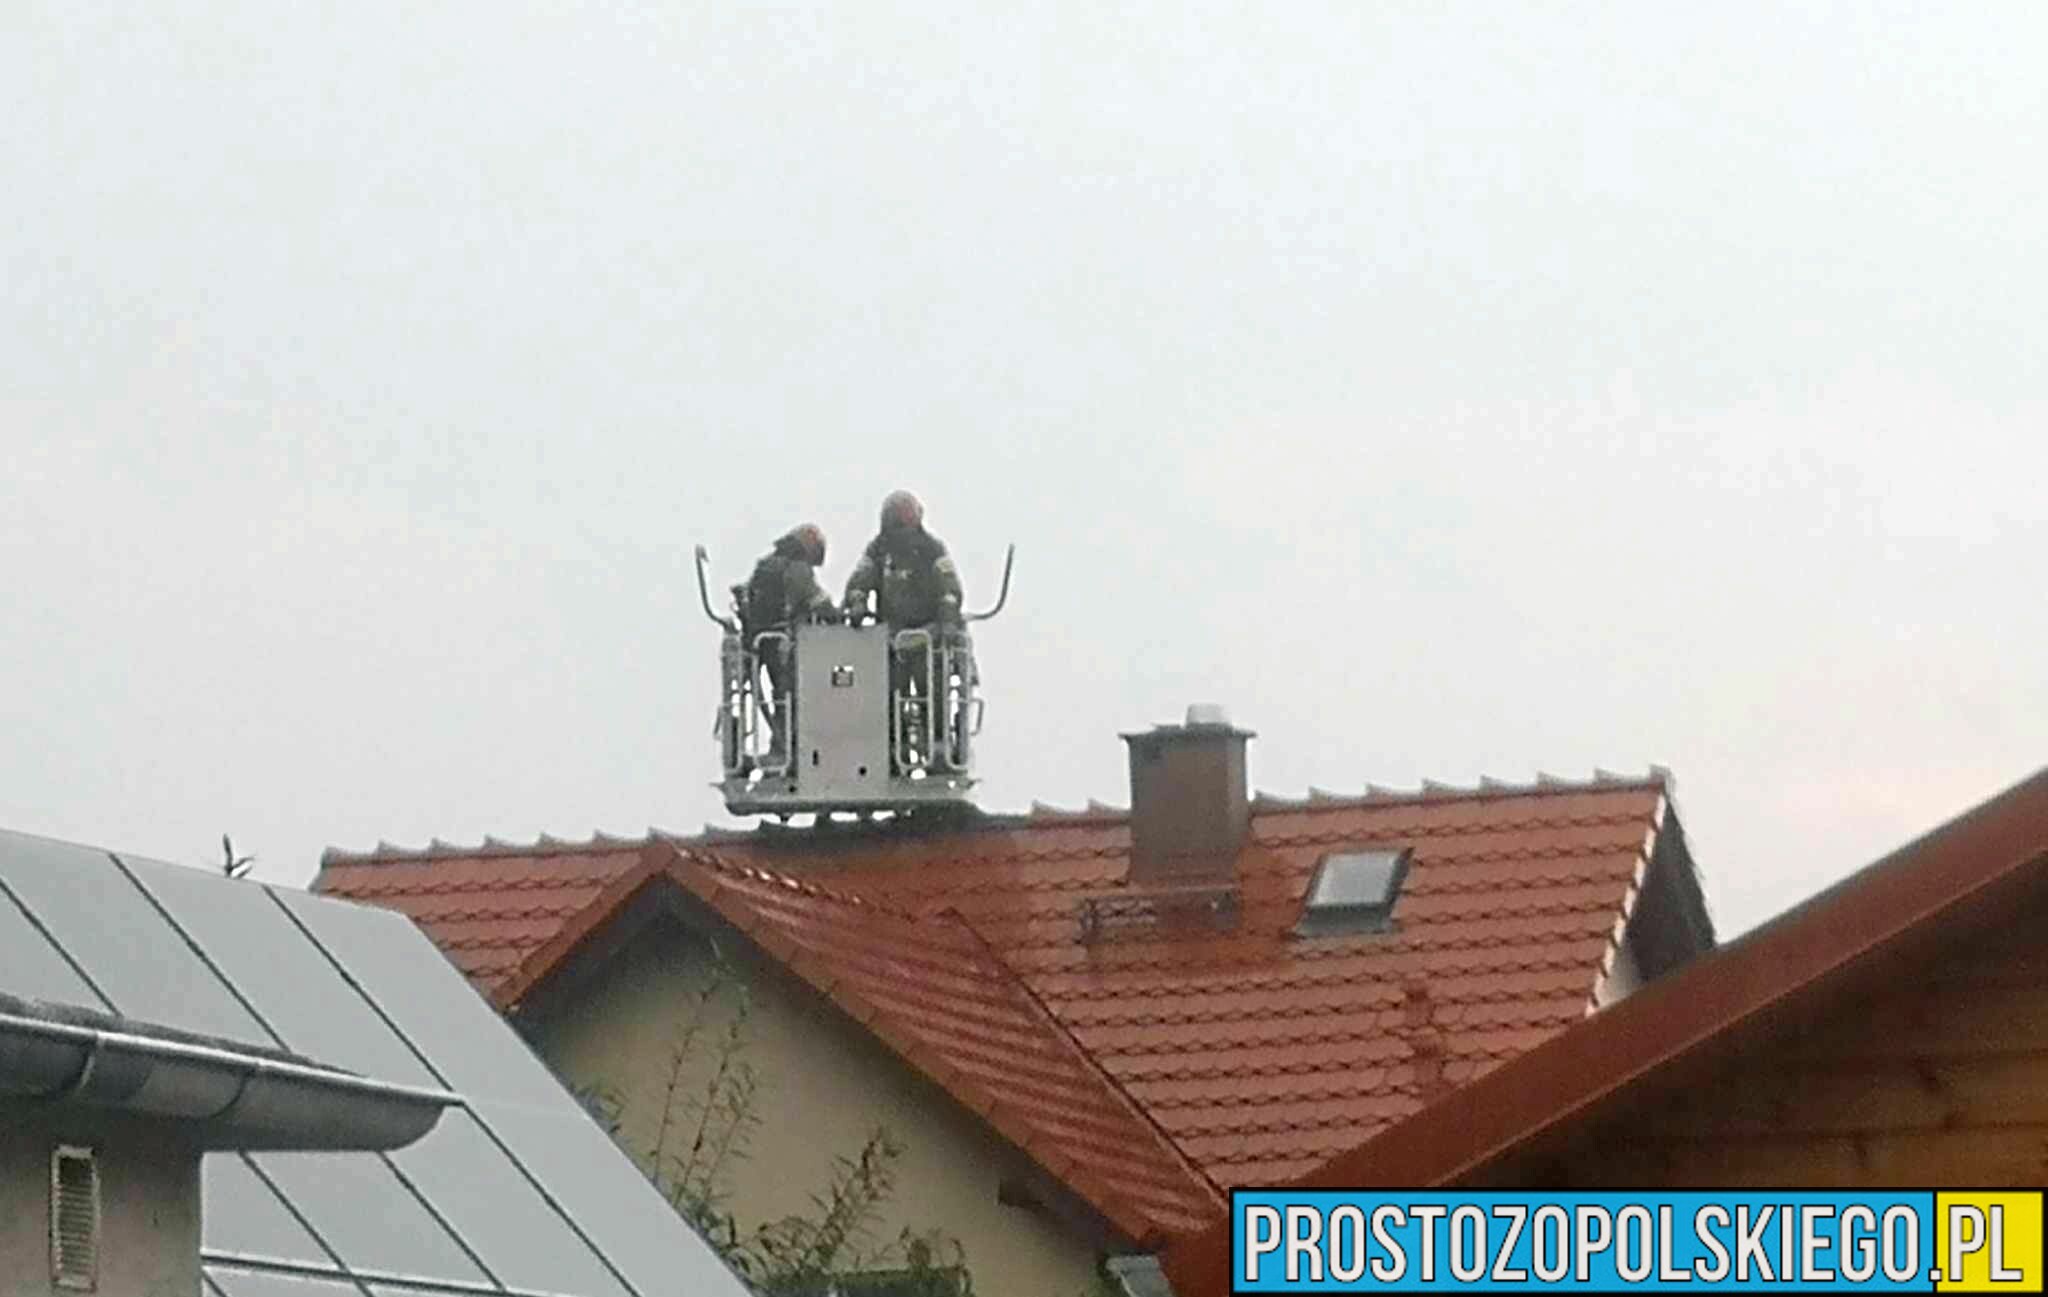 Pożar instalacji fotowoltaicznej w budynku jednorodzinnym w Brzegu.(Zdjęcia)